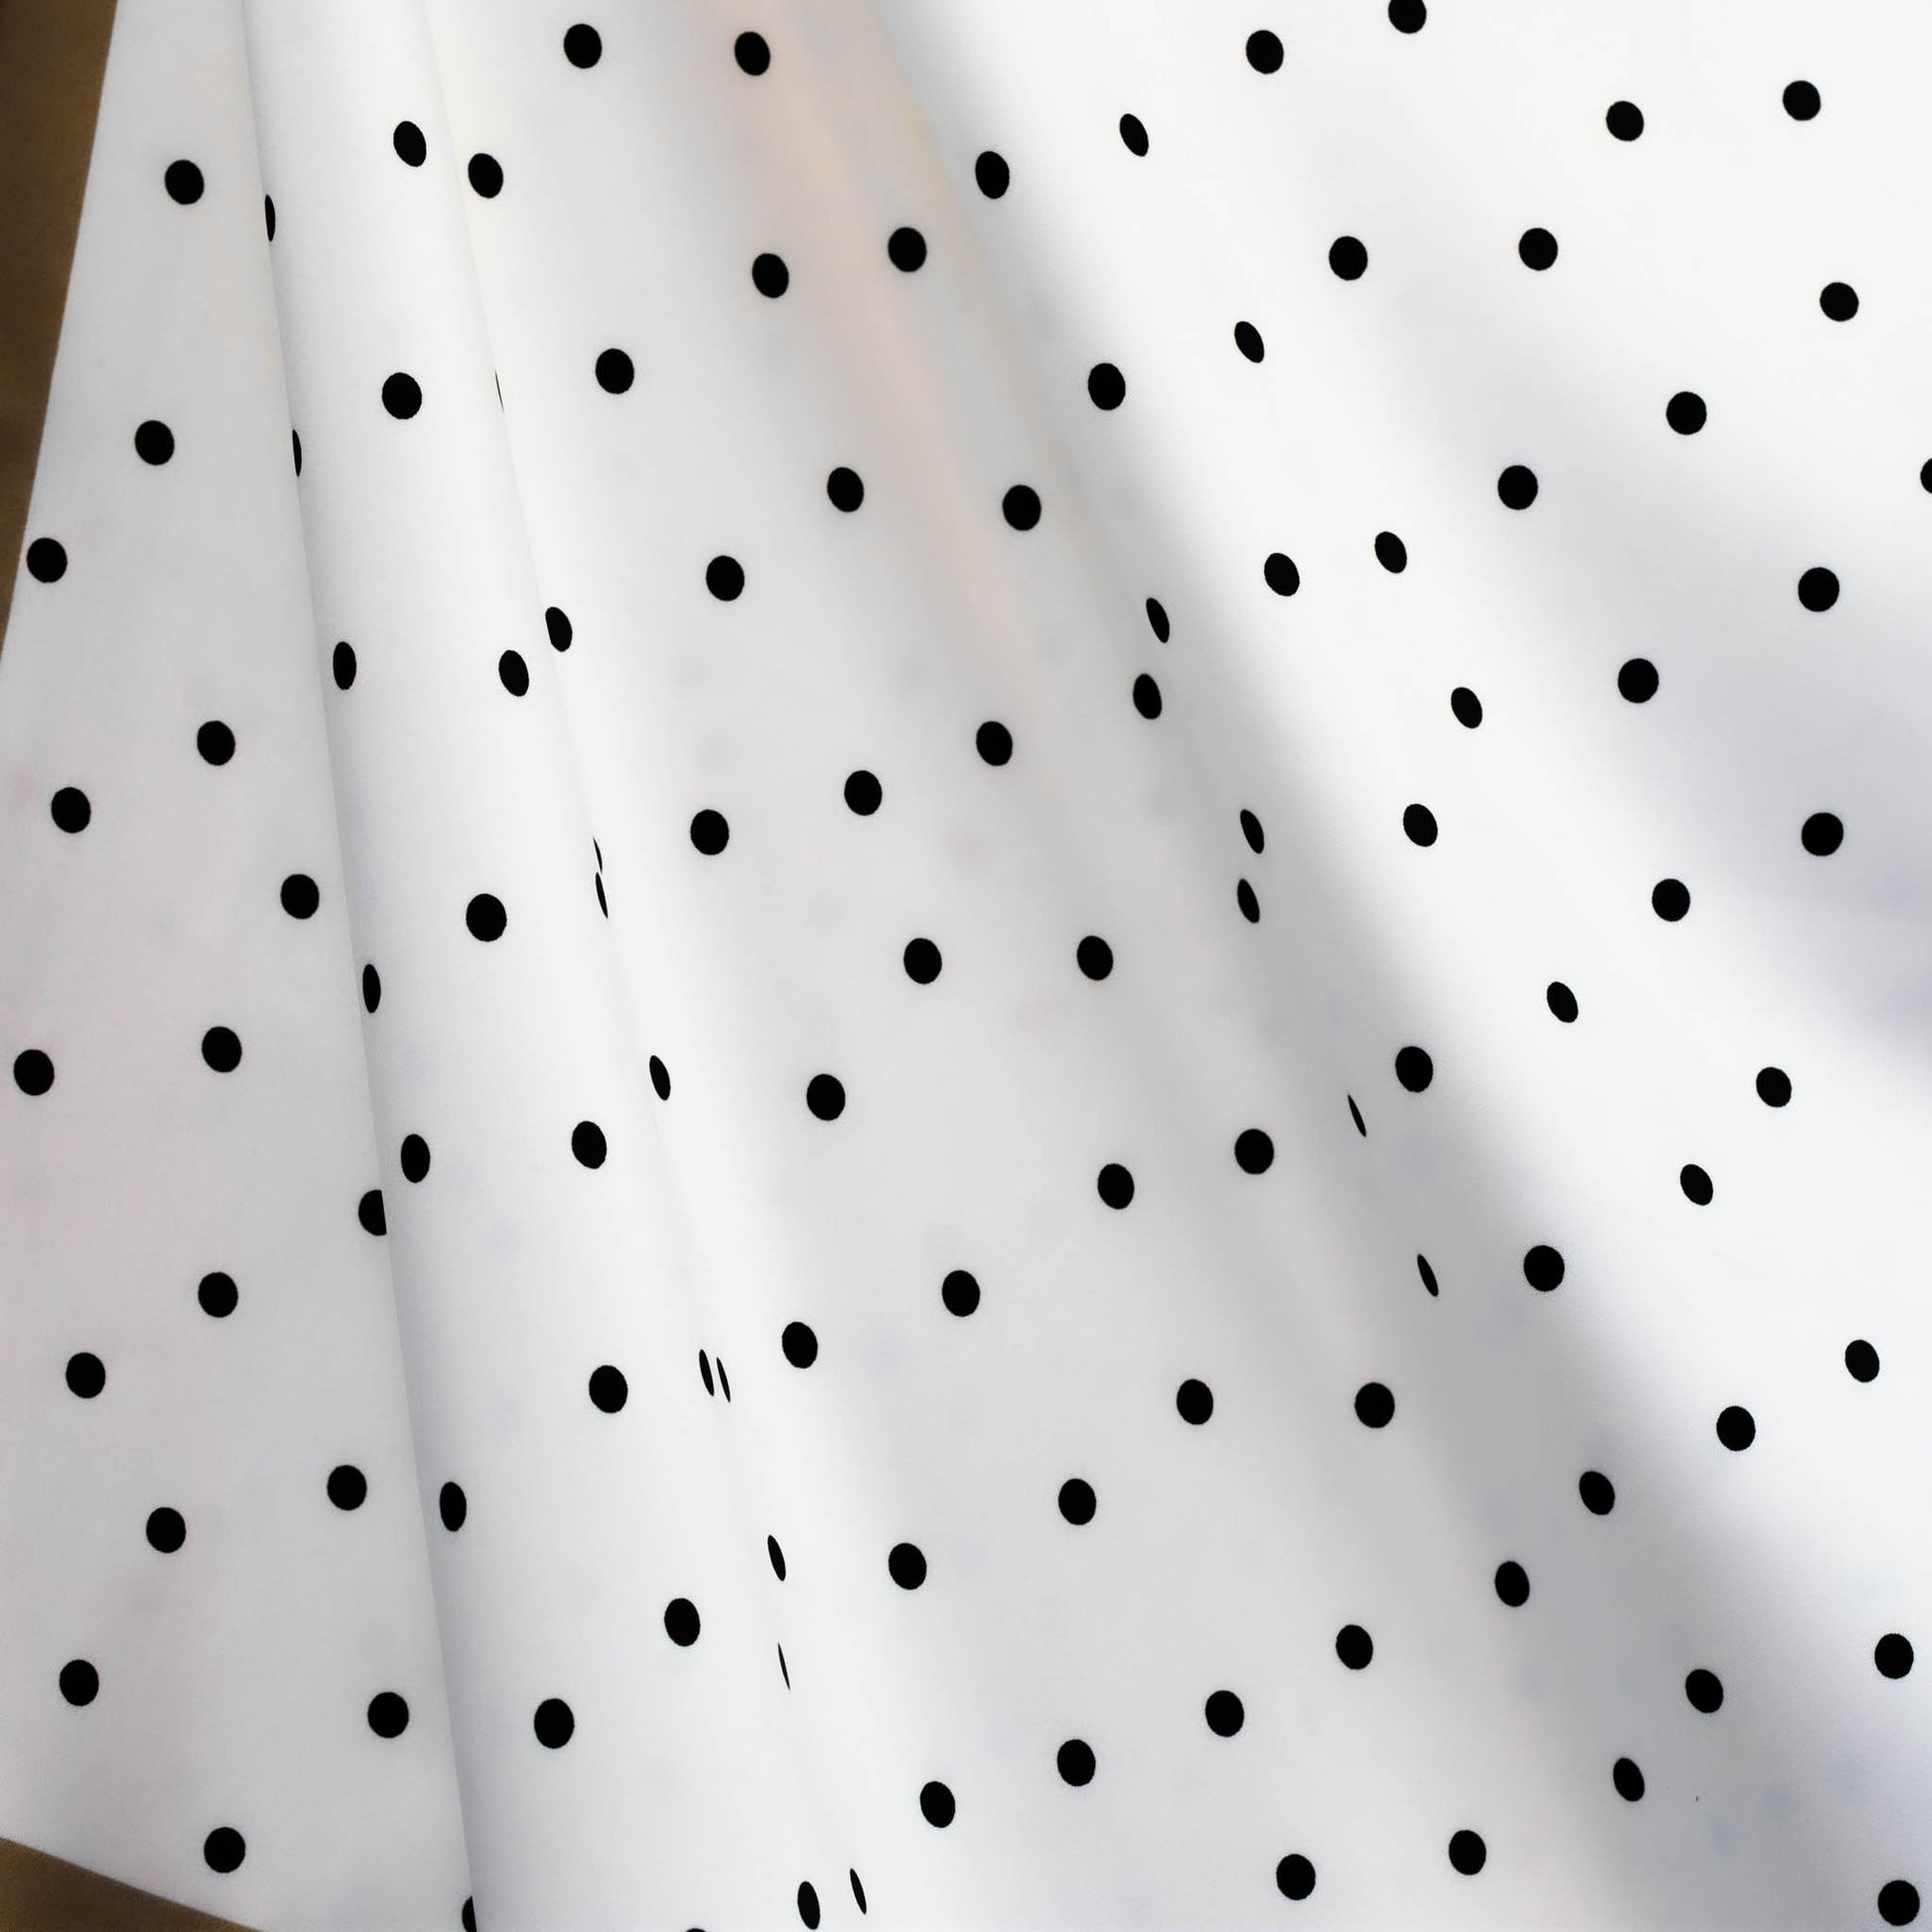 Eșarfă damă din satin, imprimeu cu buline mici și secțiuni geometrice, 70 x 70 cm - Alb, Negru